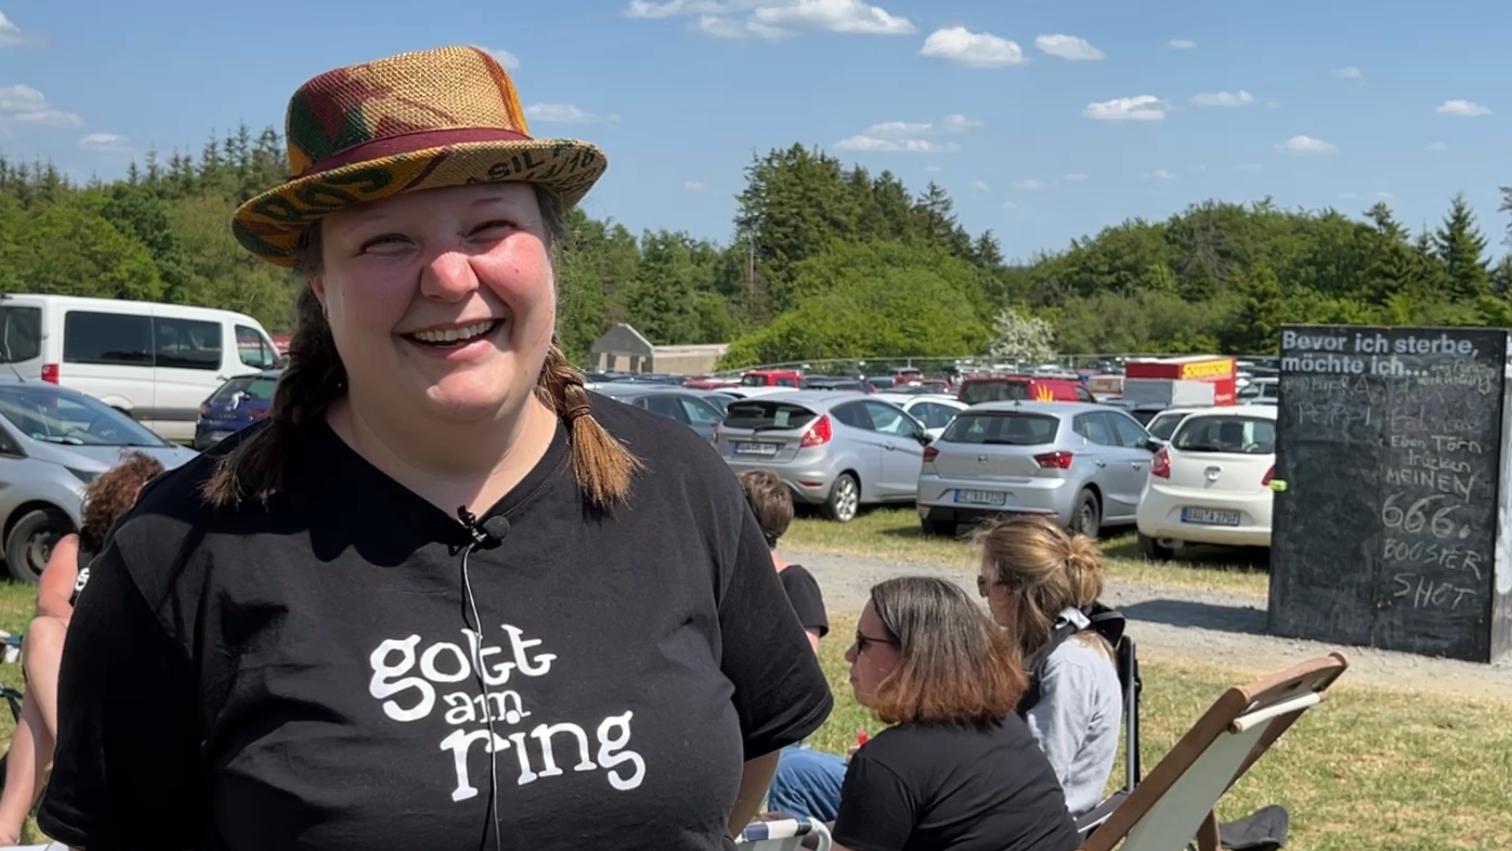 Eine Frau mit Hut und TShirt mit der Aufschrift 'Gott am Ring'